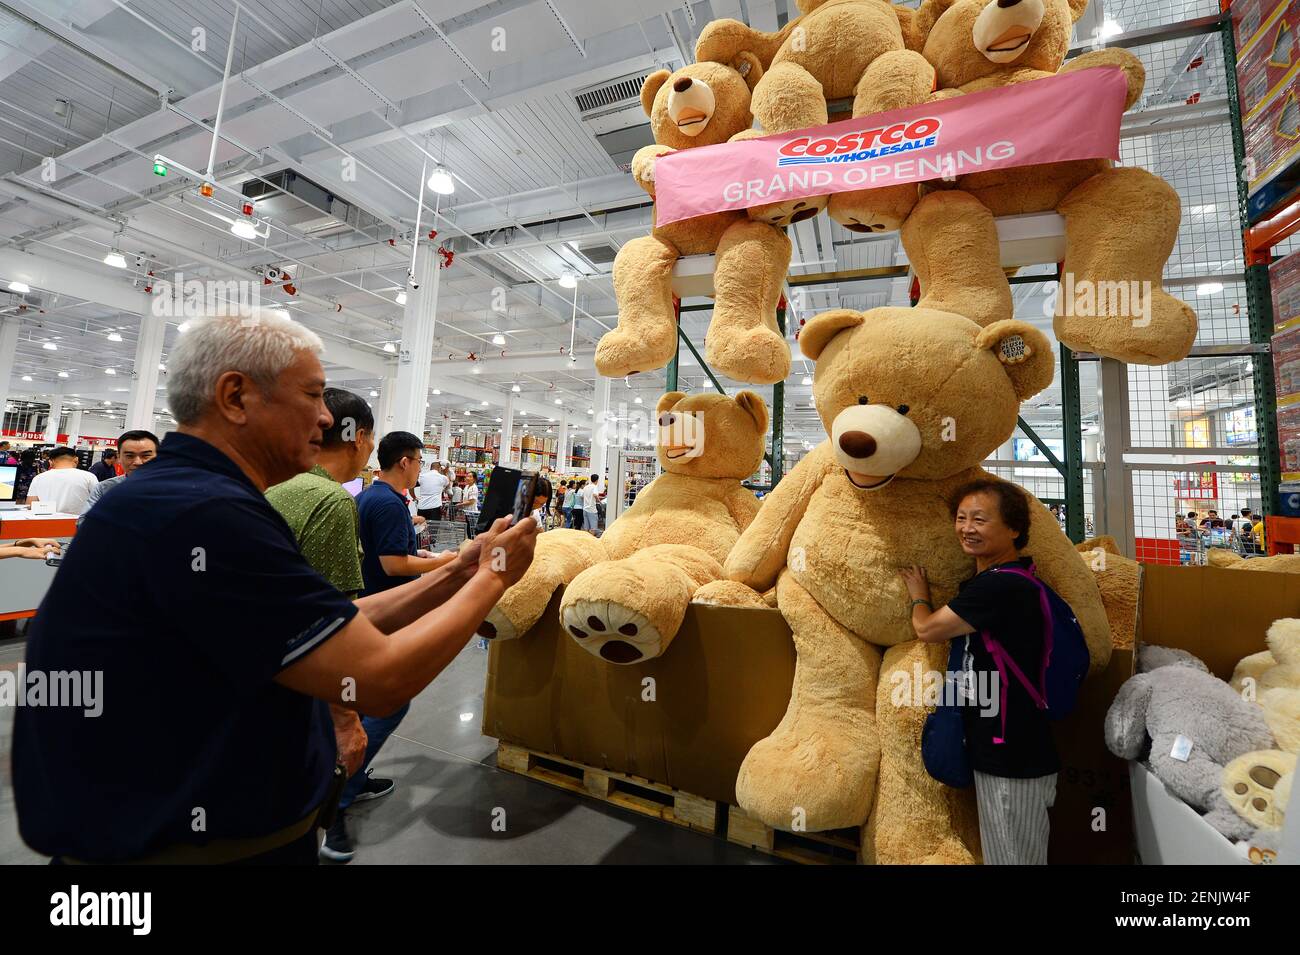 Les acheteurs chinois prennent des photos avec des ours en peluche géants  au magasin Costco de Shanghai, en Chine, le 29 août 2019. Costco, le géant  américain de la chaîne de vente